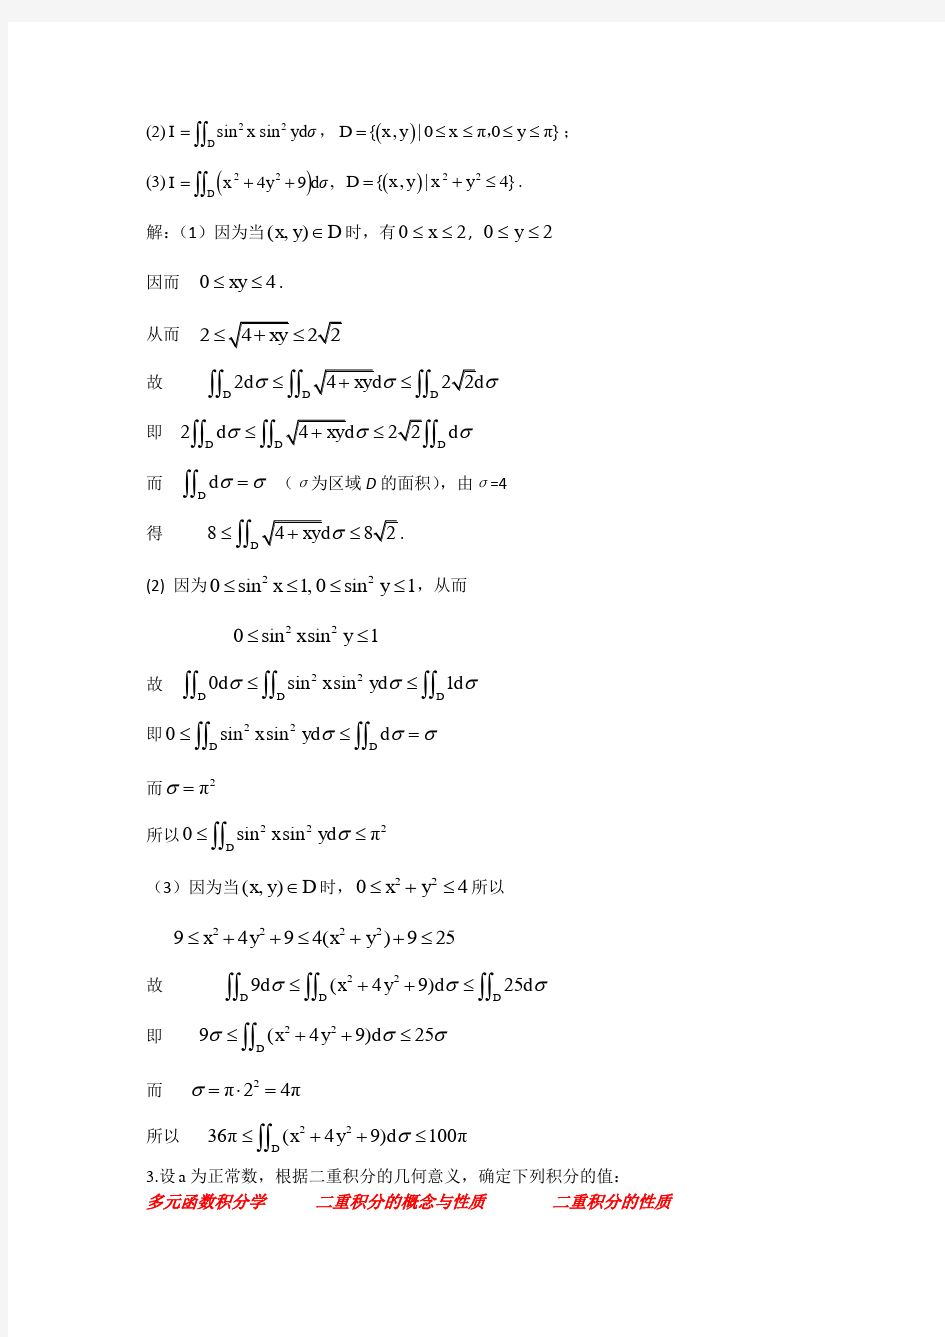 高等数学下册第十章习题答案详解